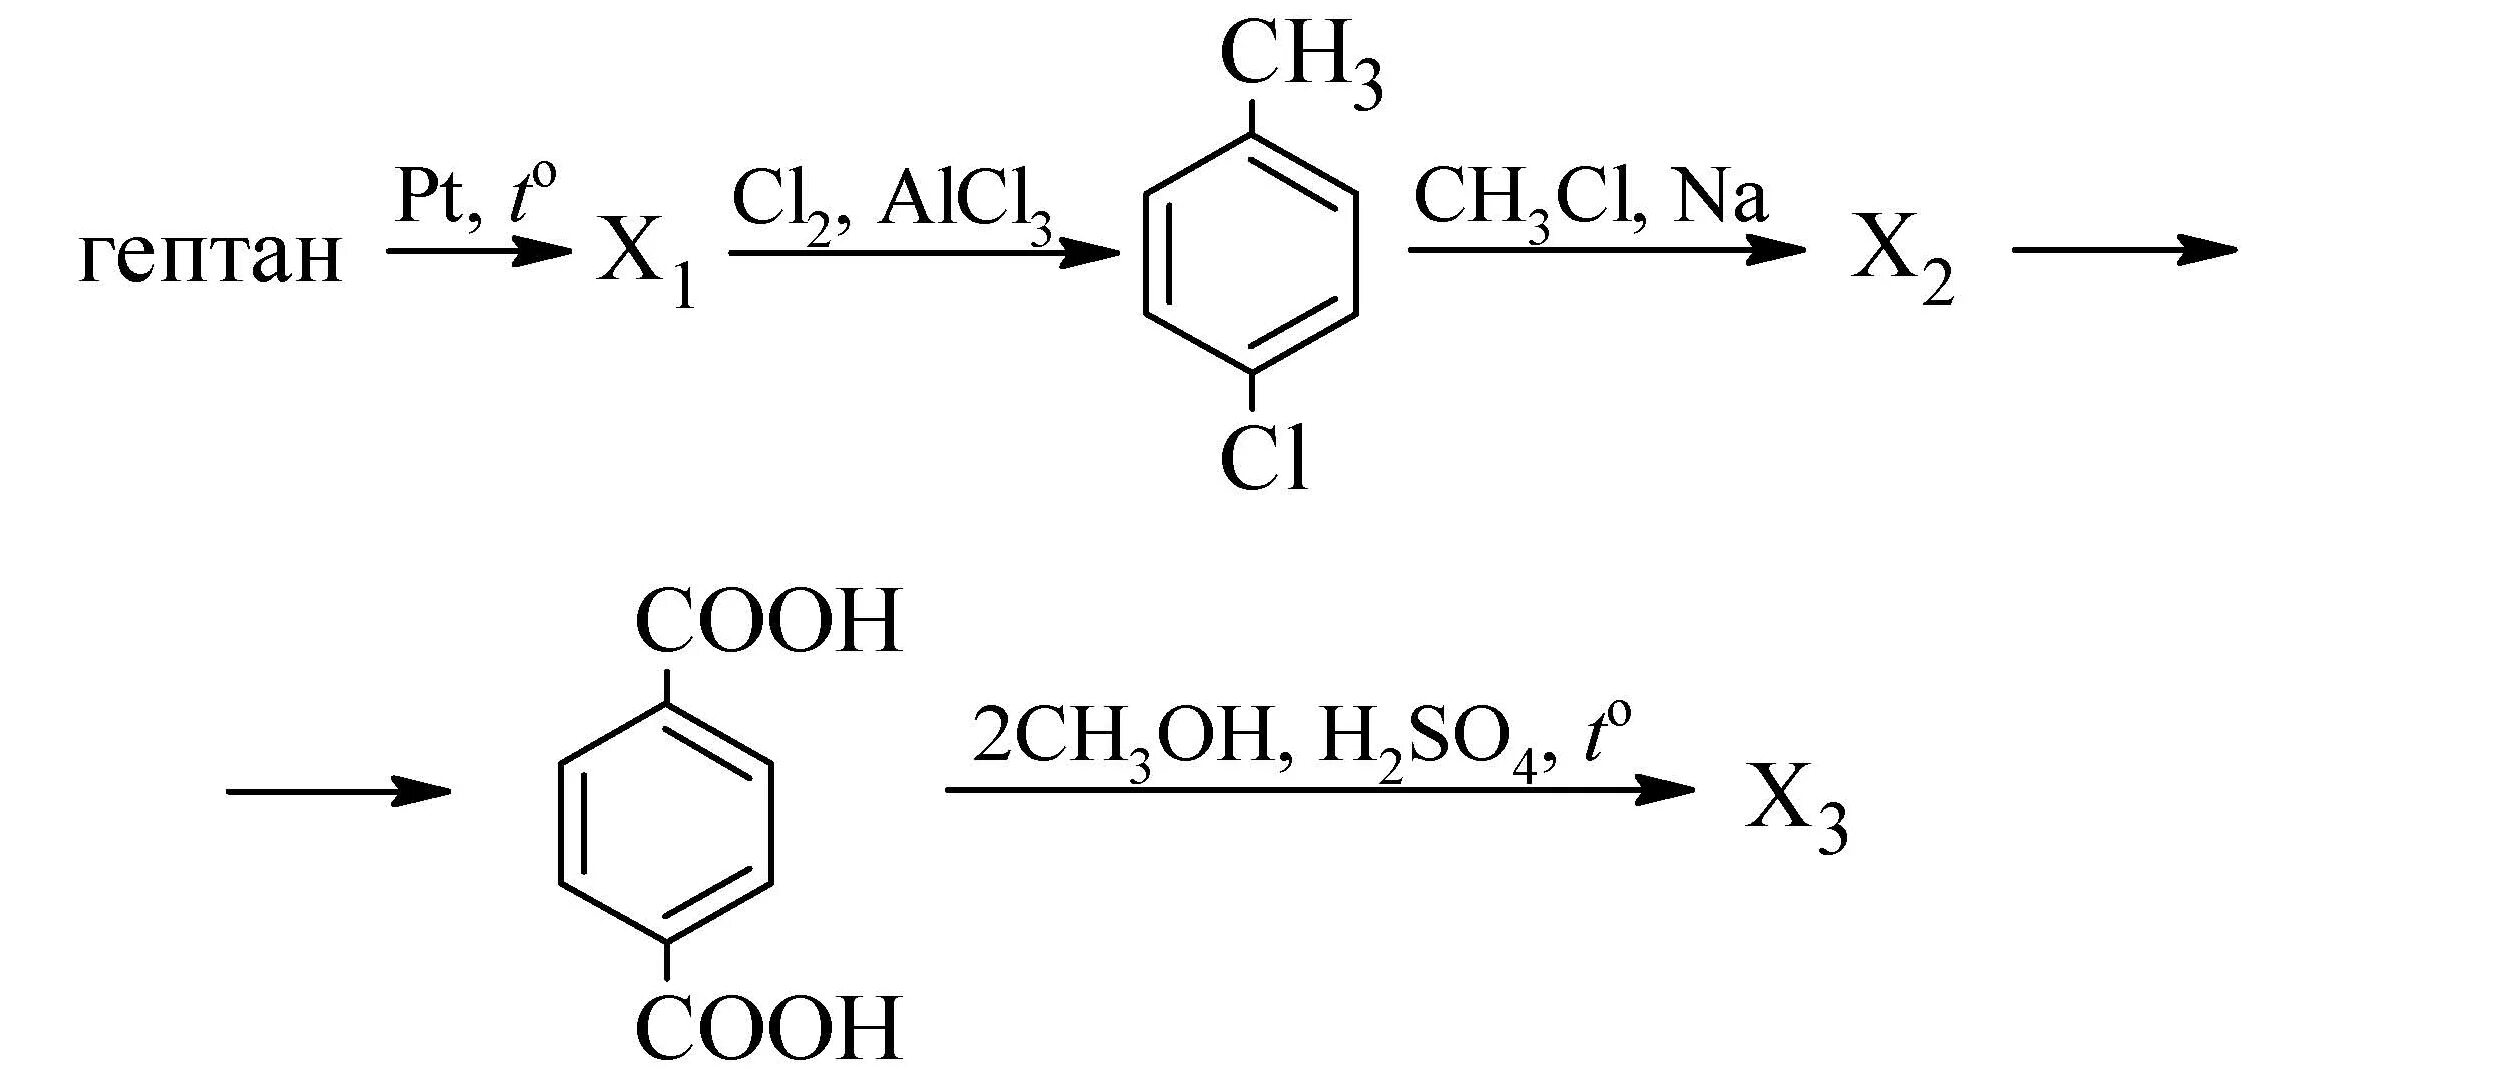 Гептан pt t реакция. Гептан pt t x1 cl2. Получение толуола из гептана. Цепочки реакций бензол.